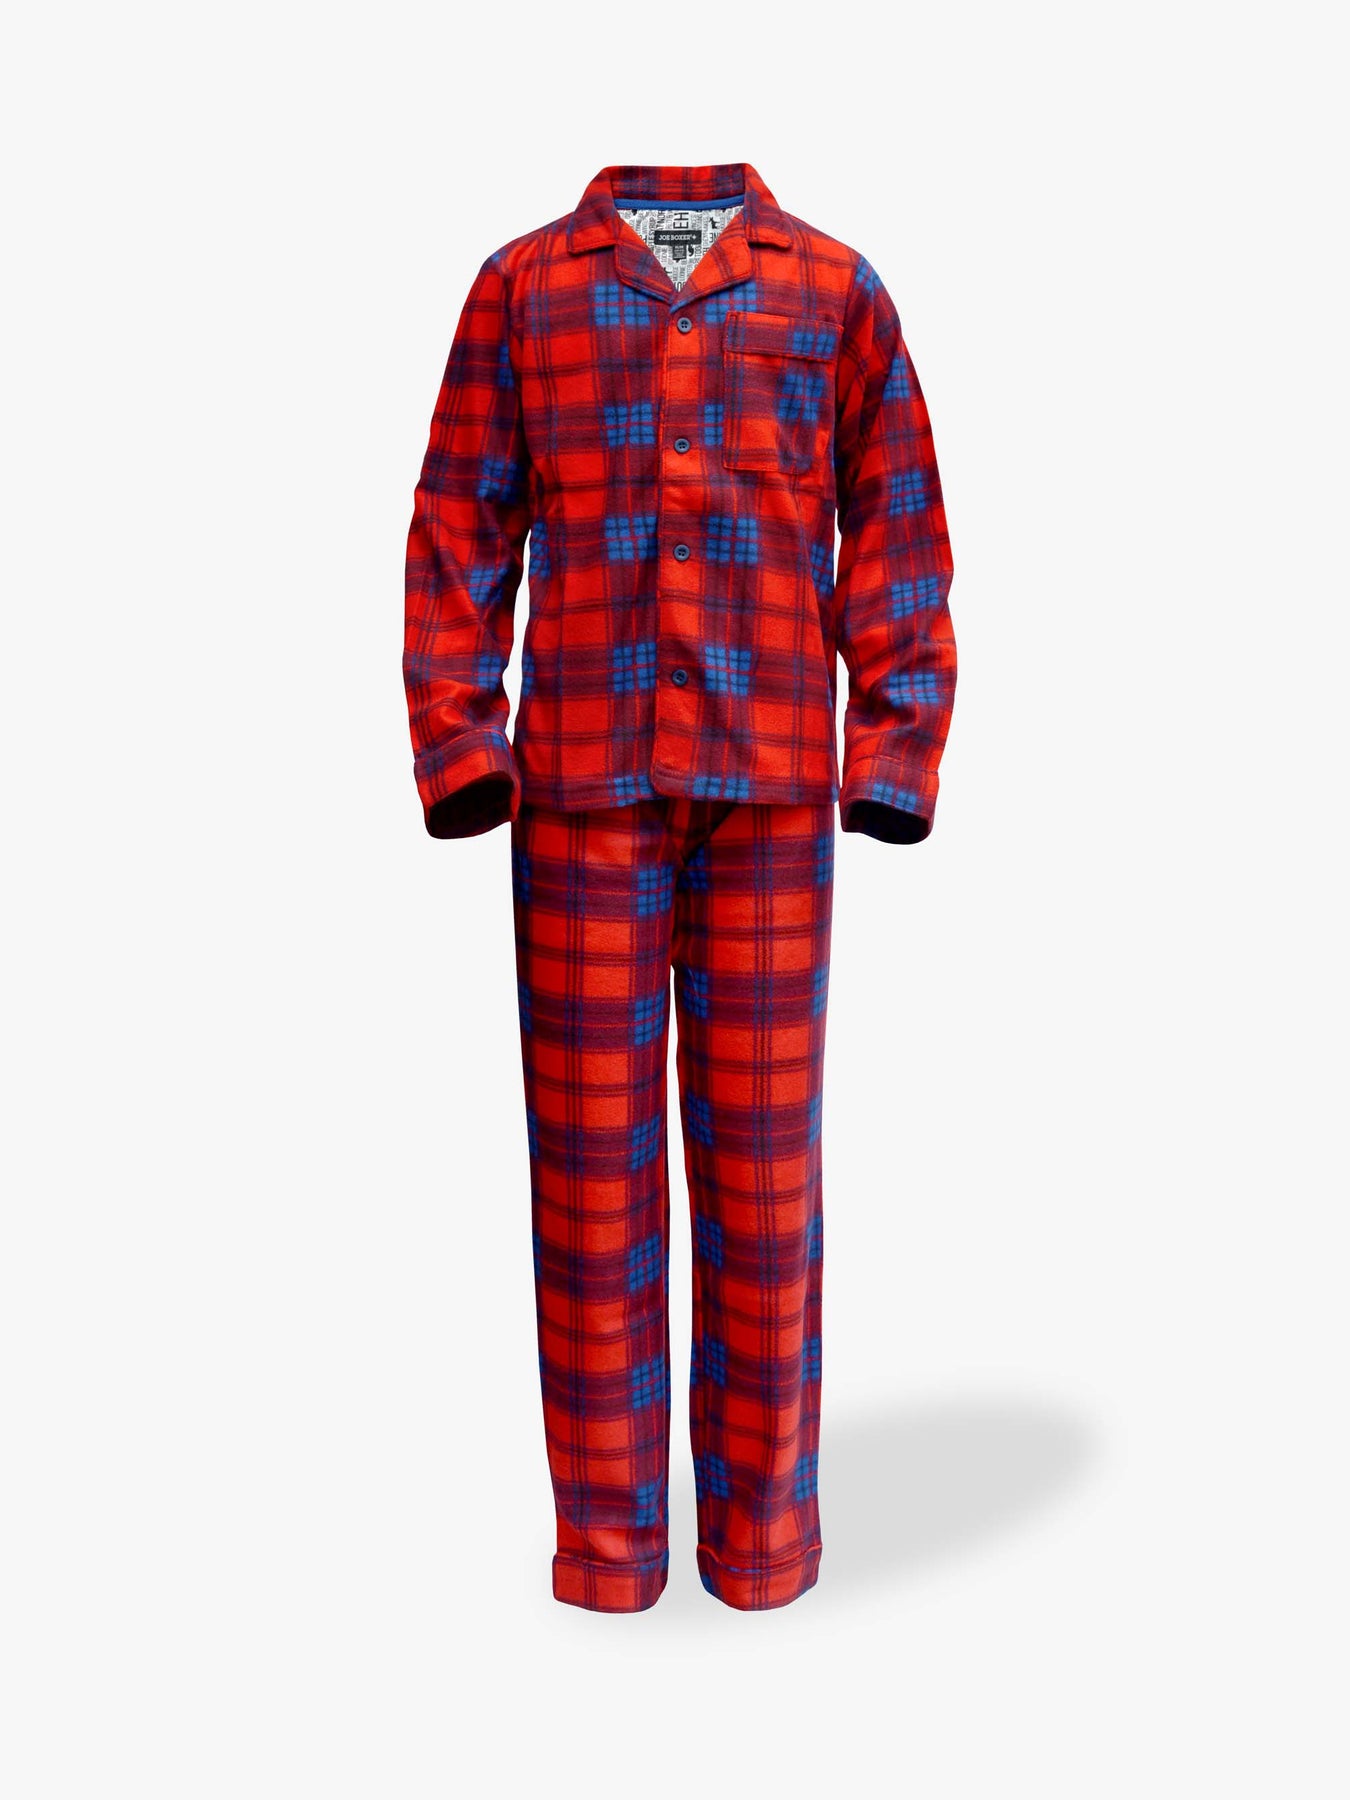 Boys Pajamas & Underwear  Shop Joe Boxer Canada Now